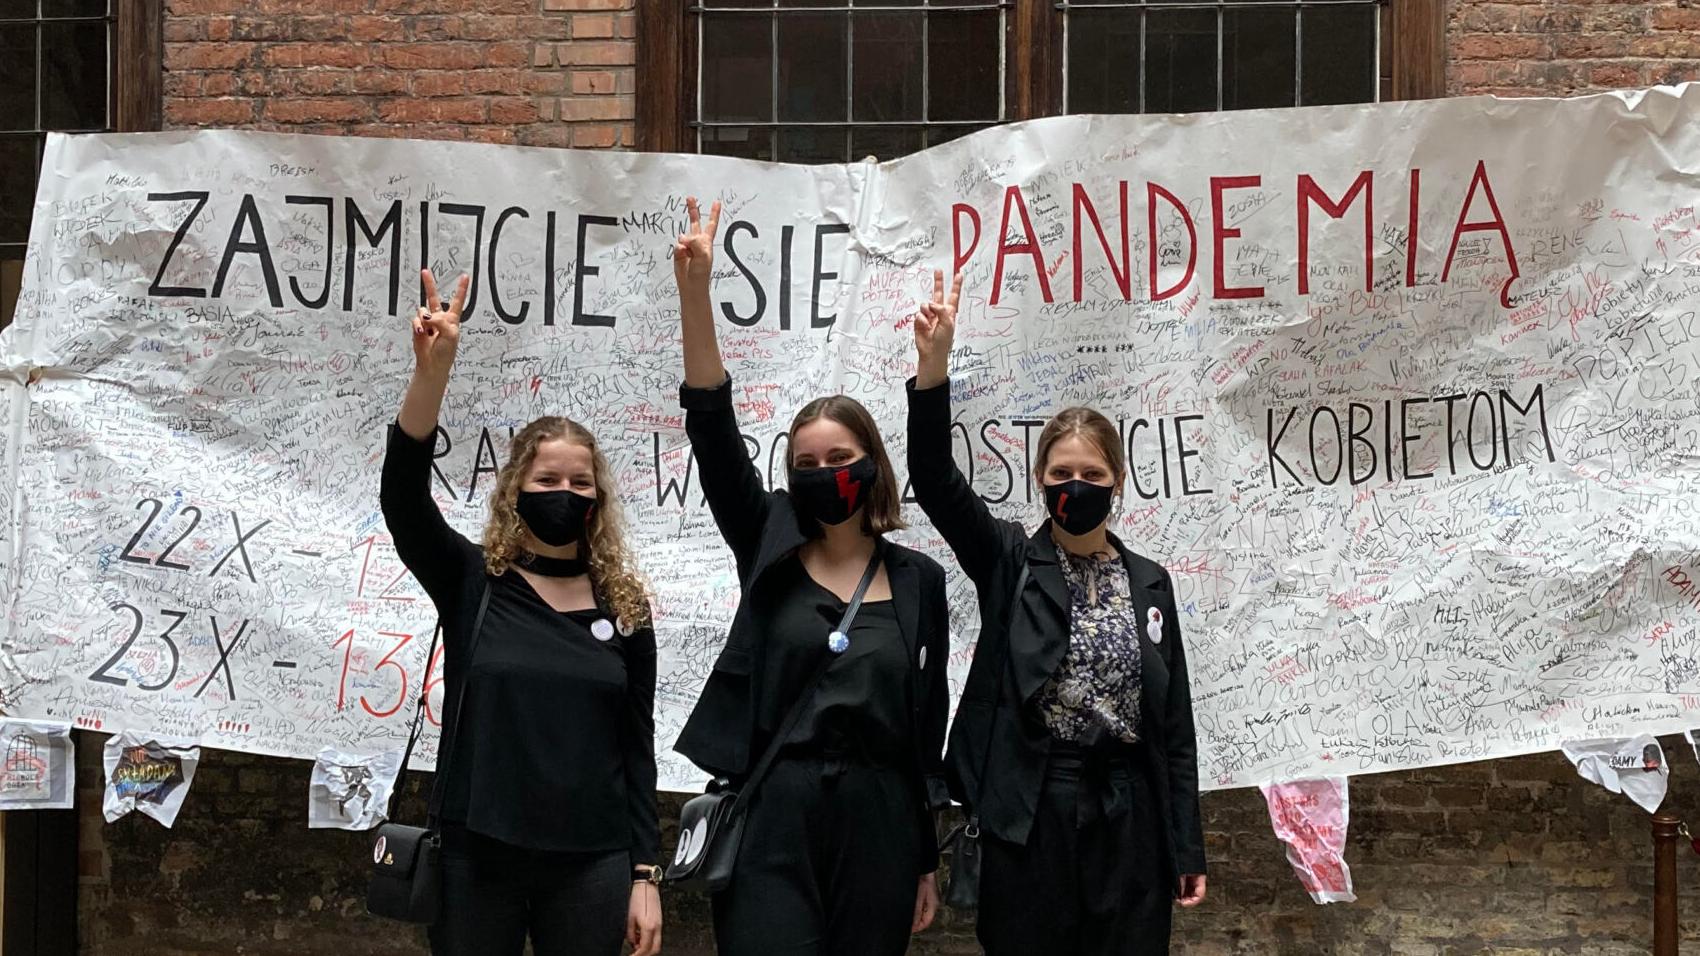 Trzy kobiety i transparent "Zajmijcie się pandemia, wybór zostawcie kobietom"